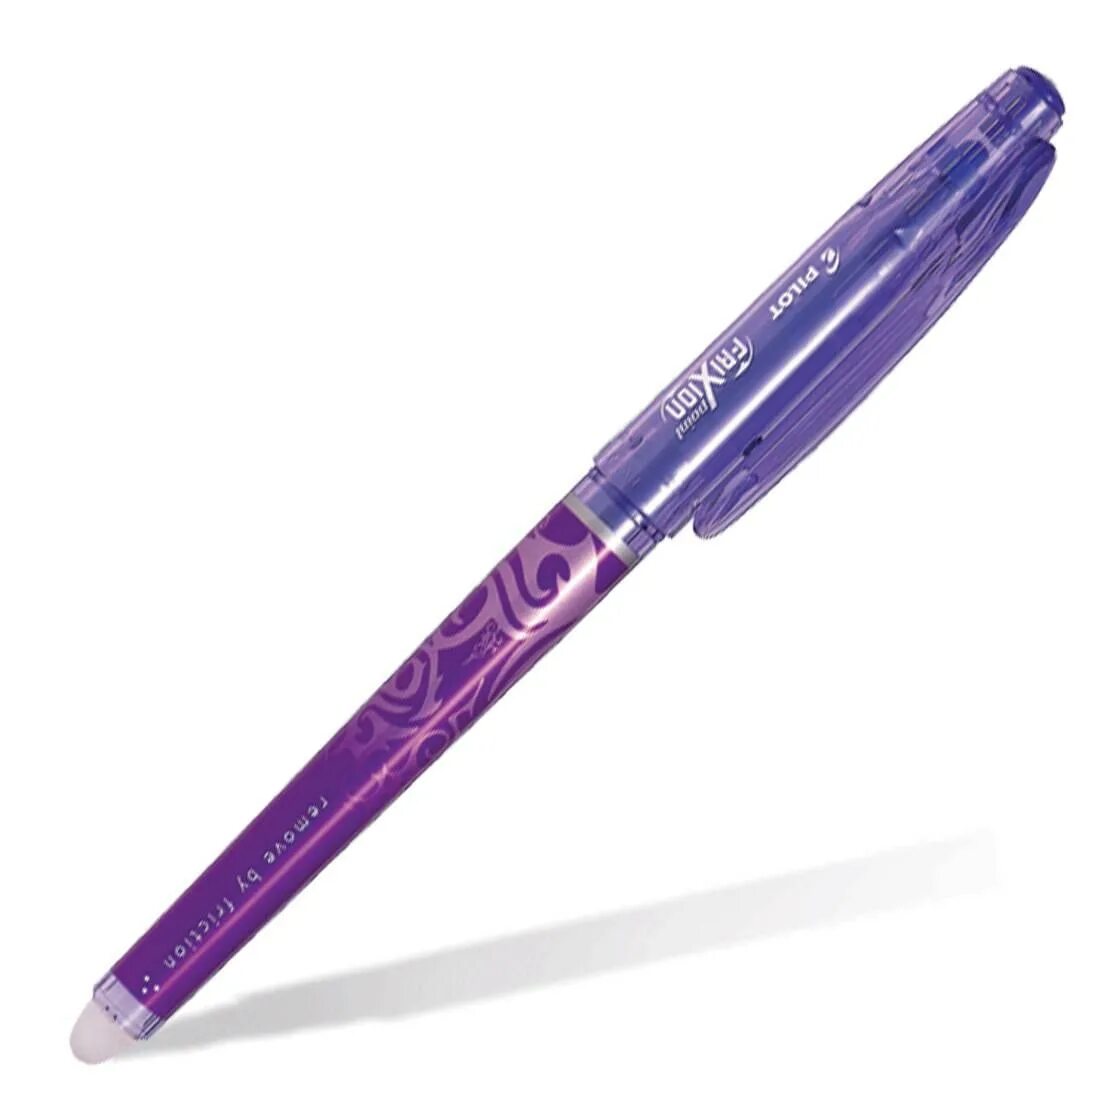 Ручка стирающаяся Pilot Frixion 0.5. Pilot Frixion фиолетовая. Ручка пилот пиши стирай. Ручки пилот пиши стирай 0.5.